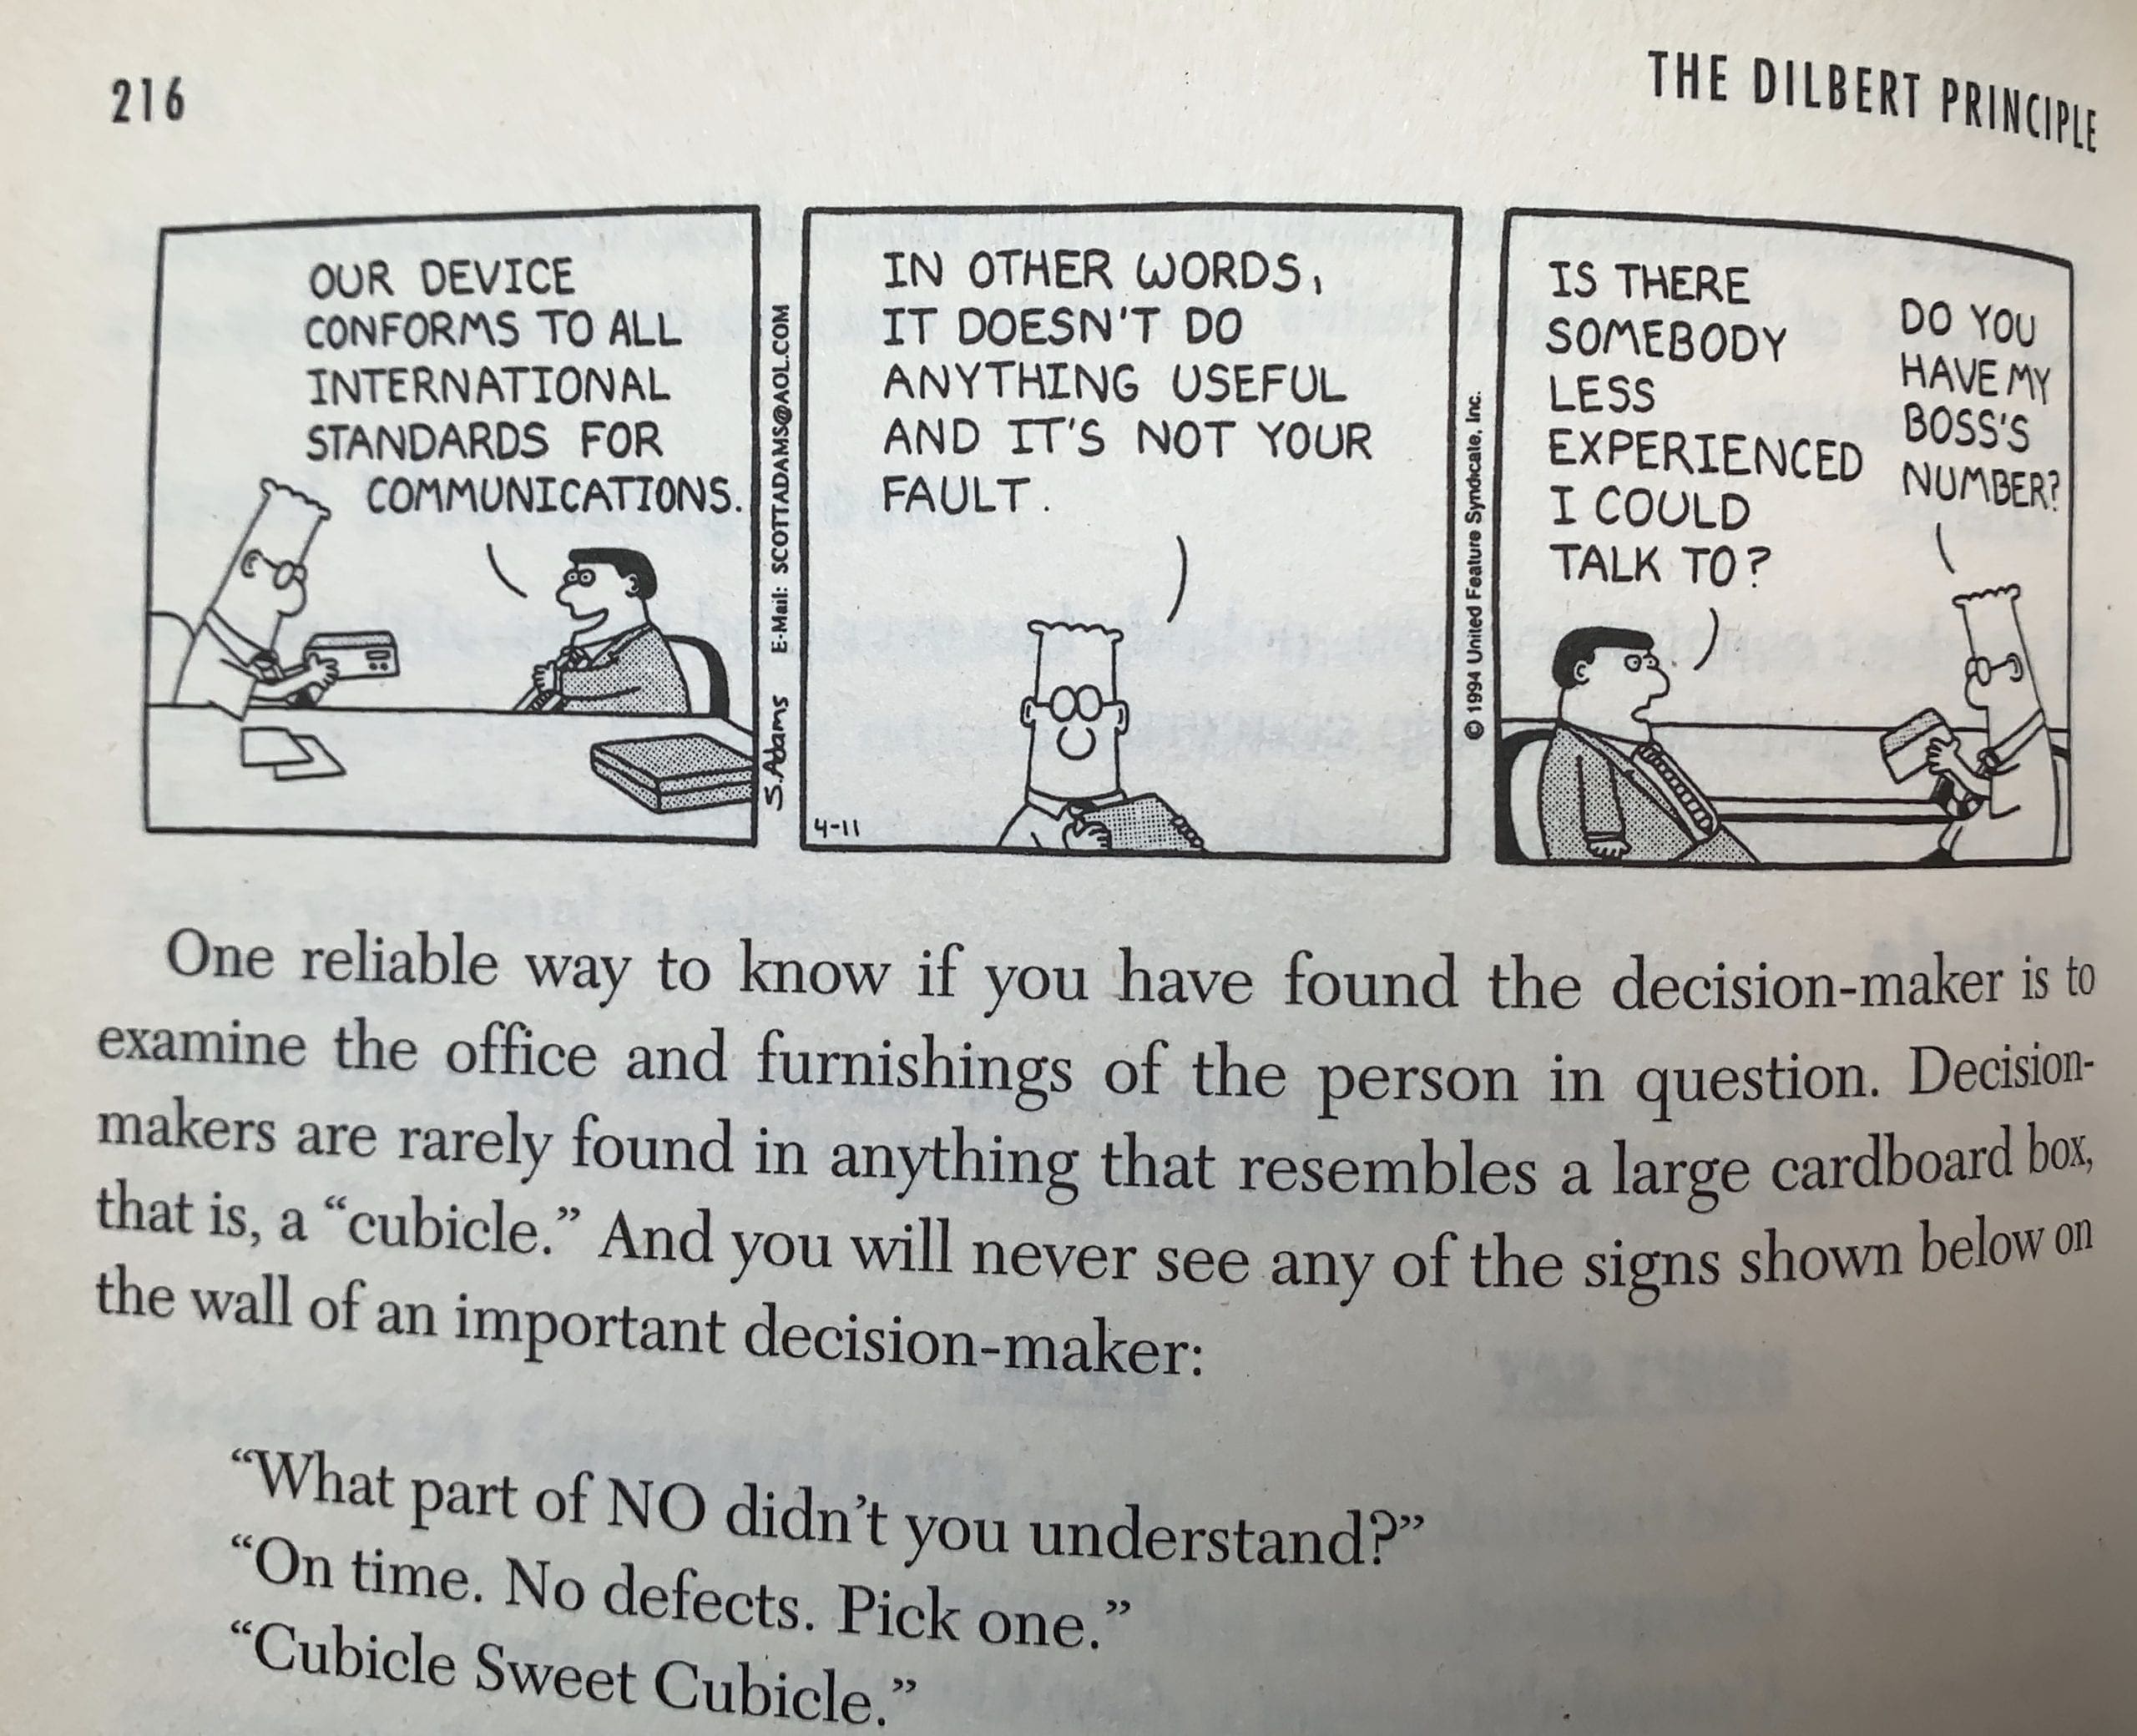 A Dilbert-elv